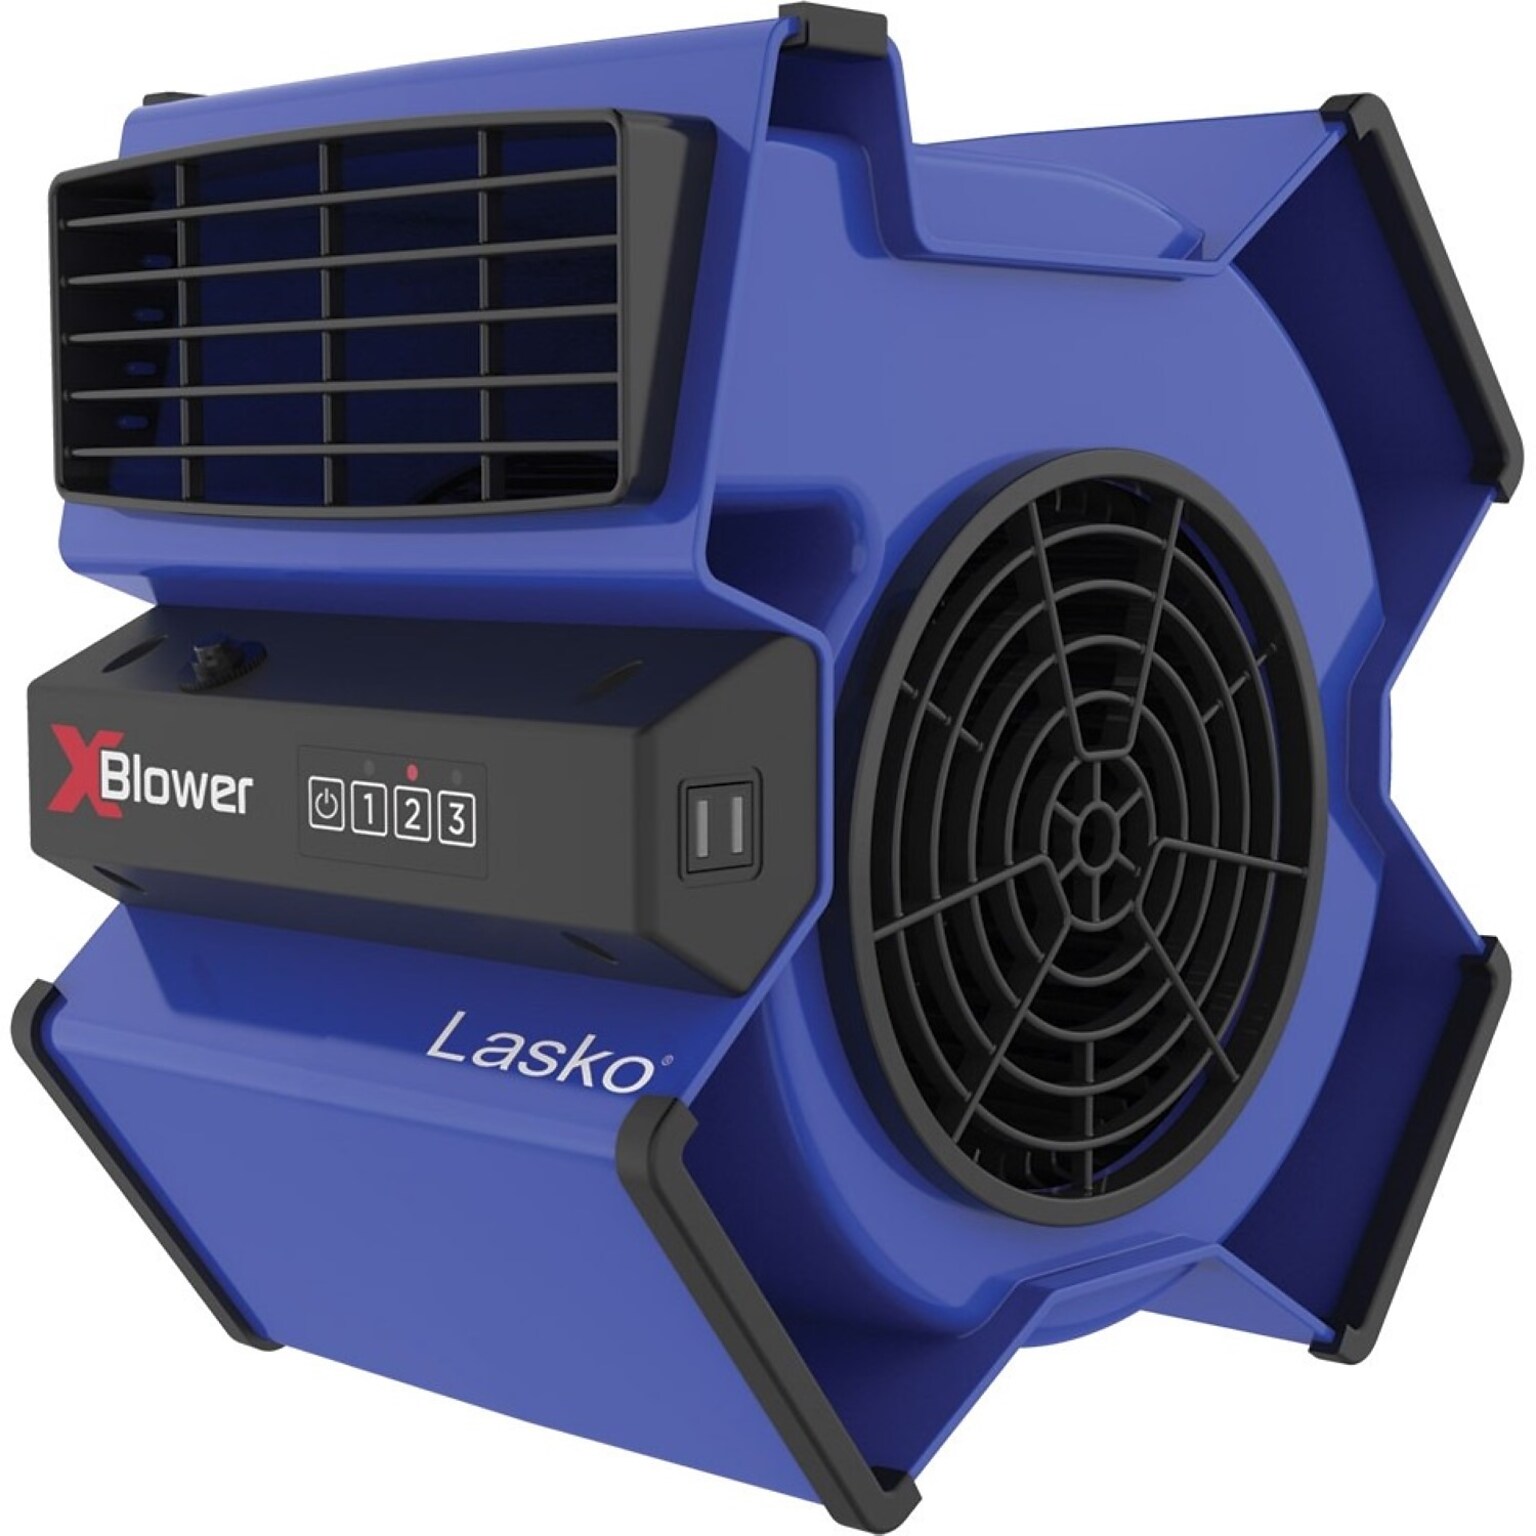 Lasko X-Blower 11 3 Speed Multi-Position Utility Blower Fan, Blue, (X12905)